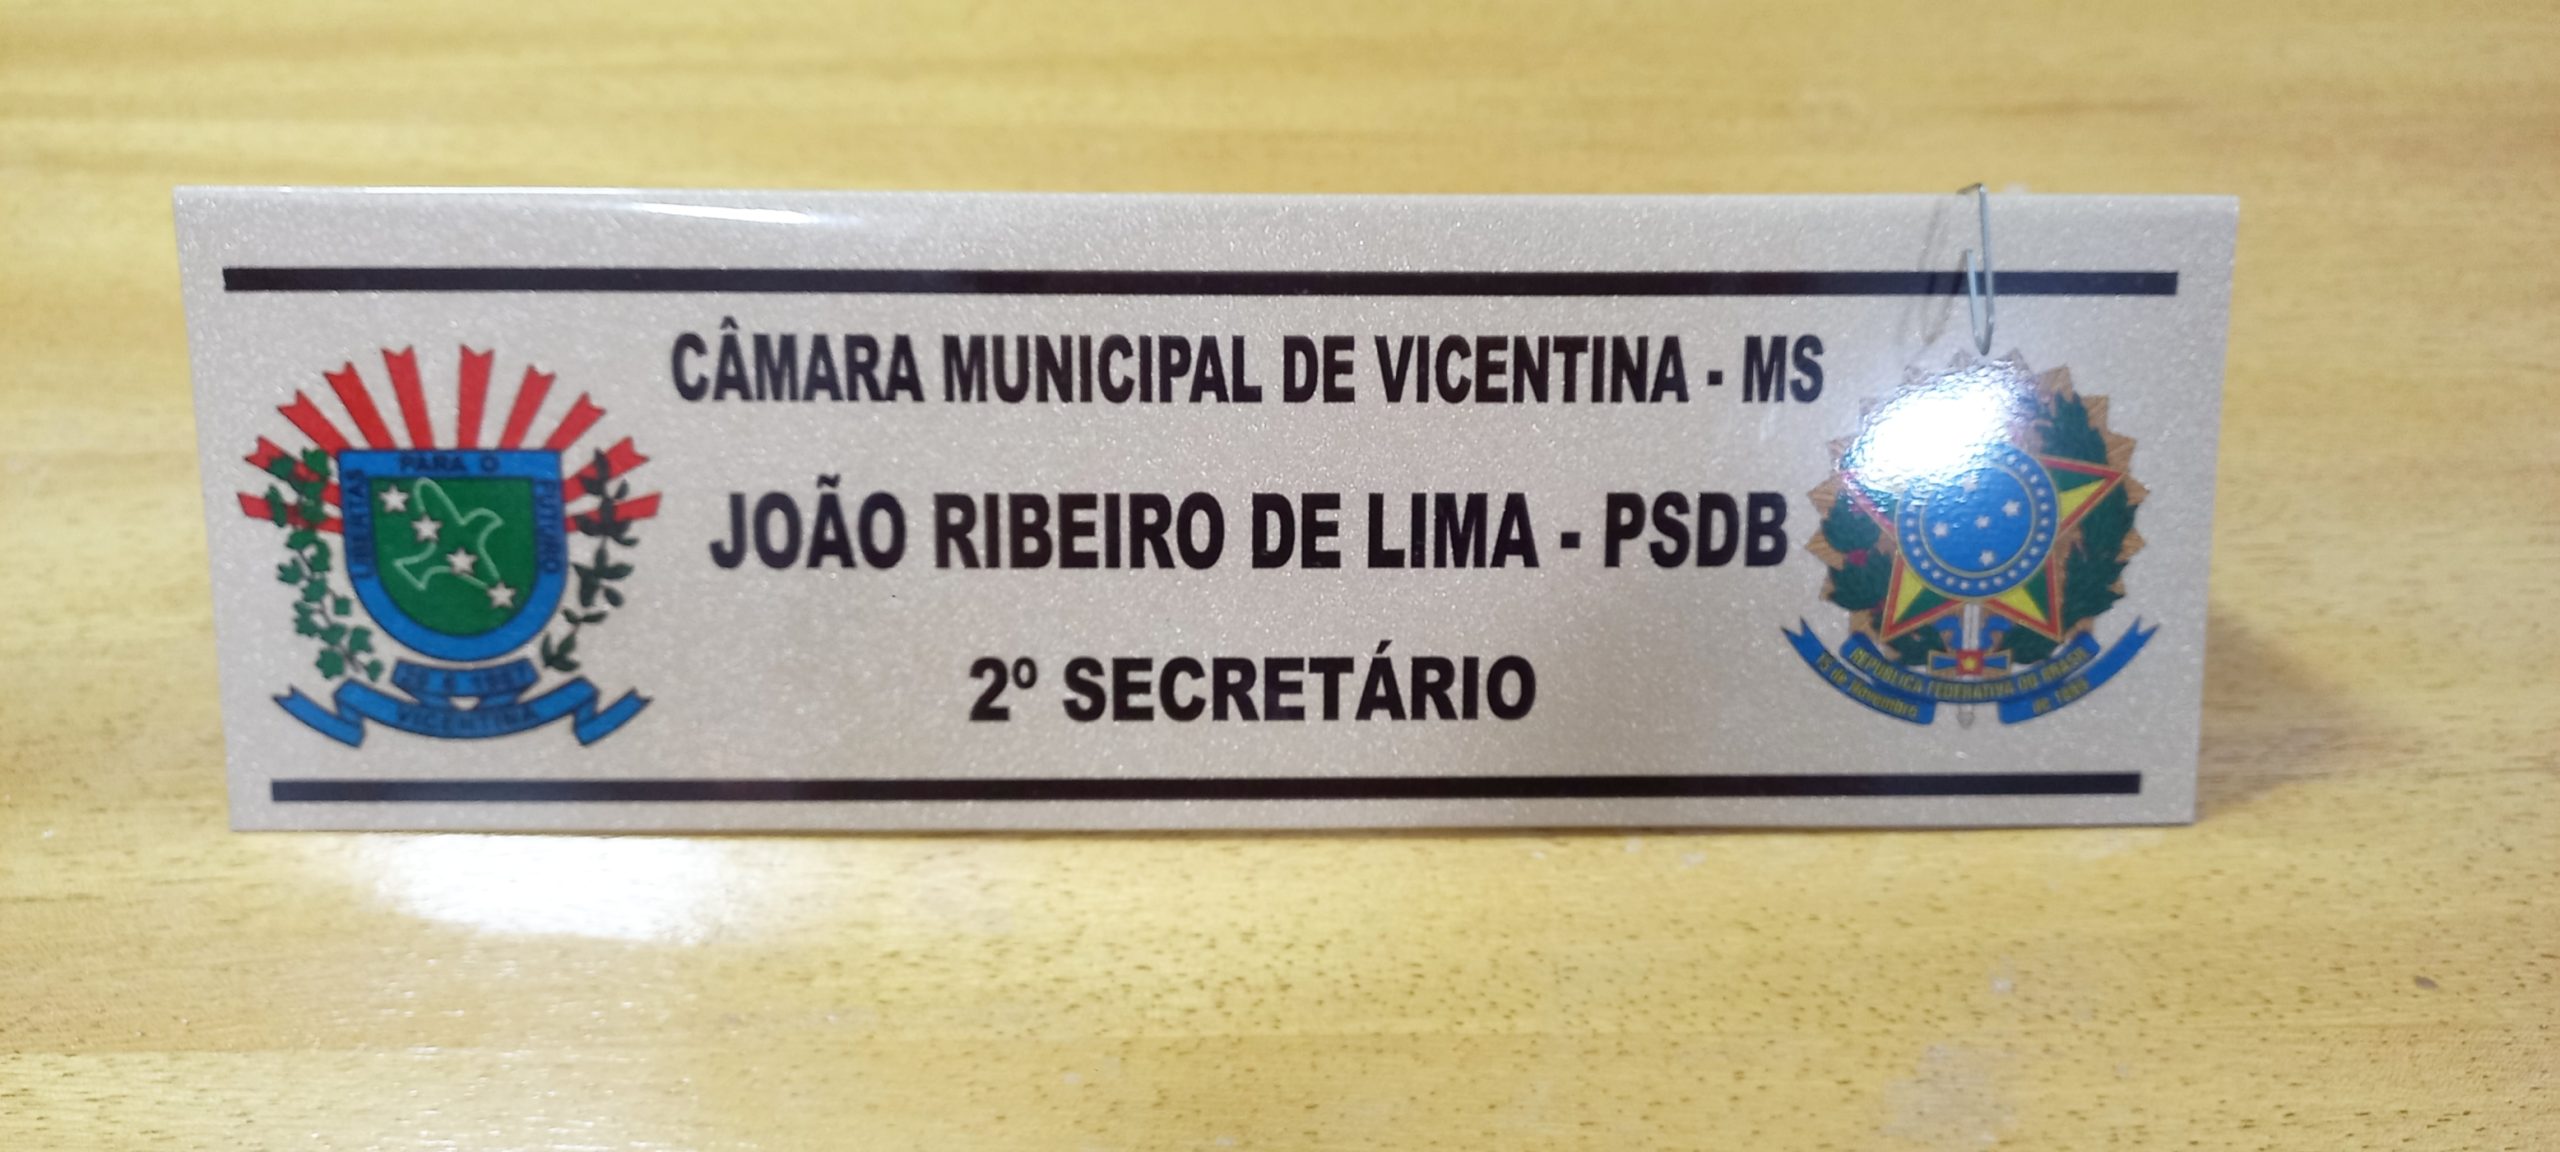 O Vereador João Ribeiro de Lima solicita a realização de cascalhamento